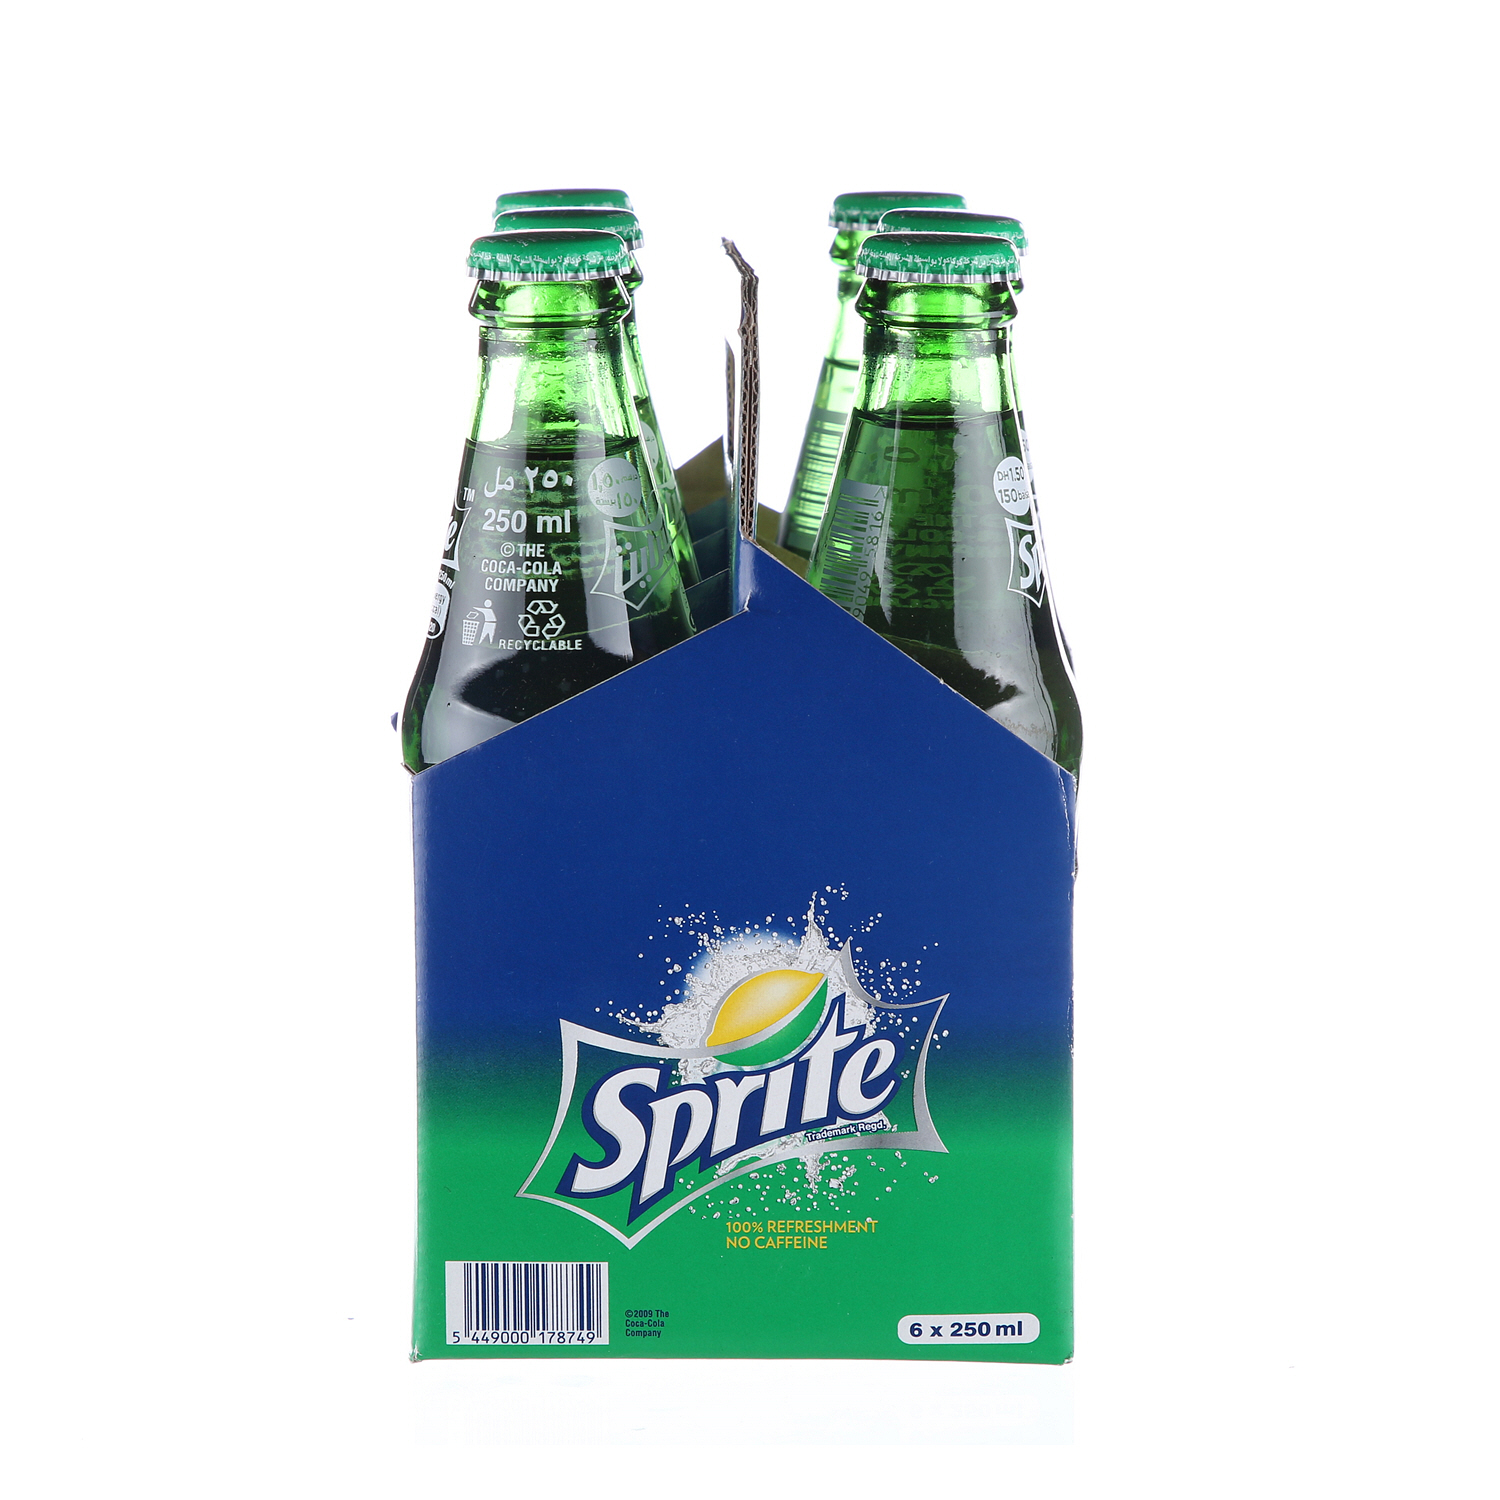 Sprite Glass Bottle 250 ml × 6 Pack